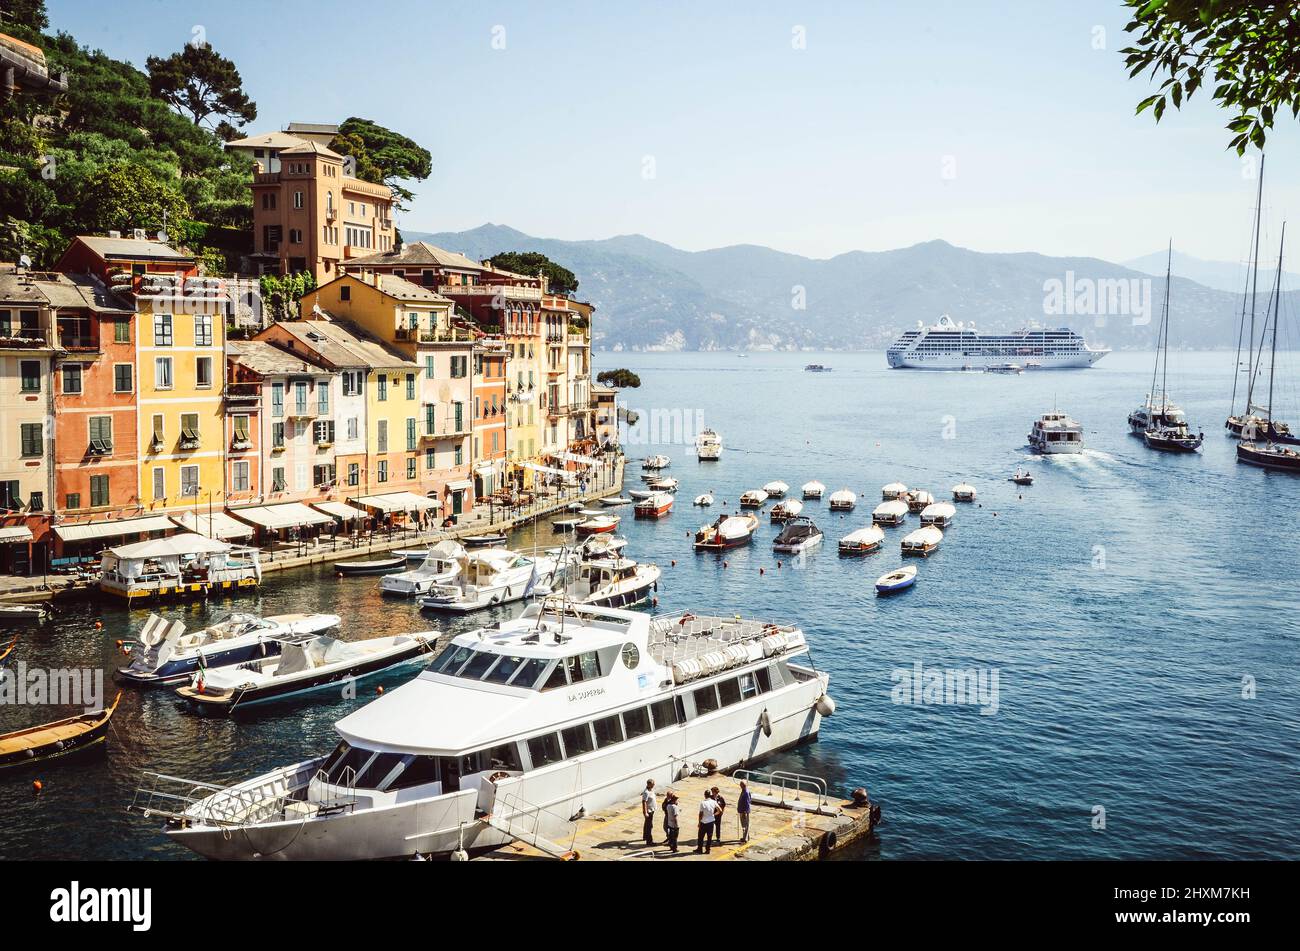 Portofino è un villaggio di pescatori sulla costa della Riviera Italiana, a sud-est della città di Genova. Foto Stock